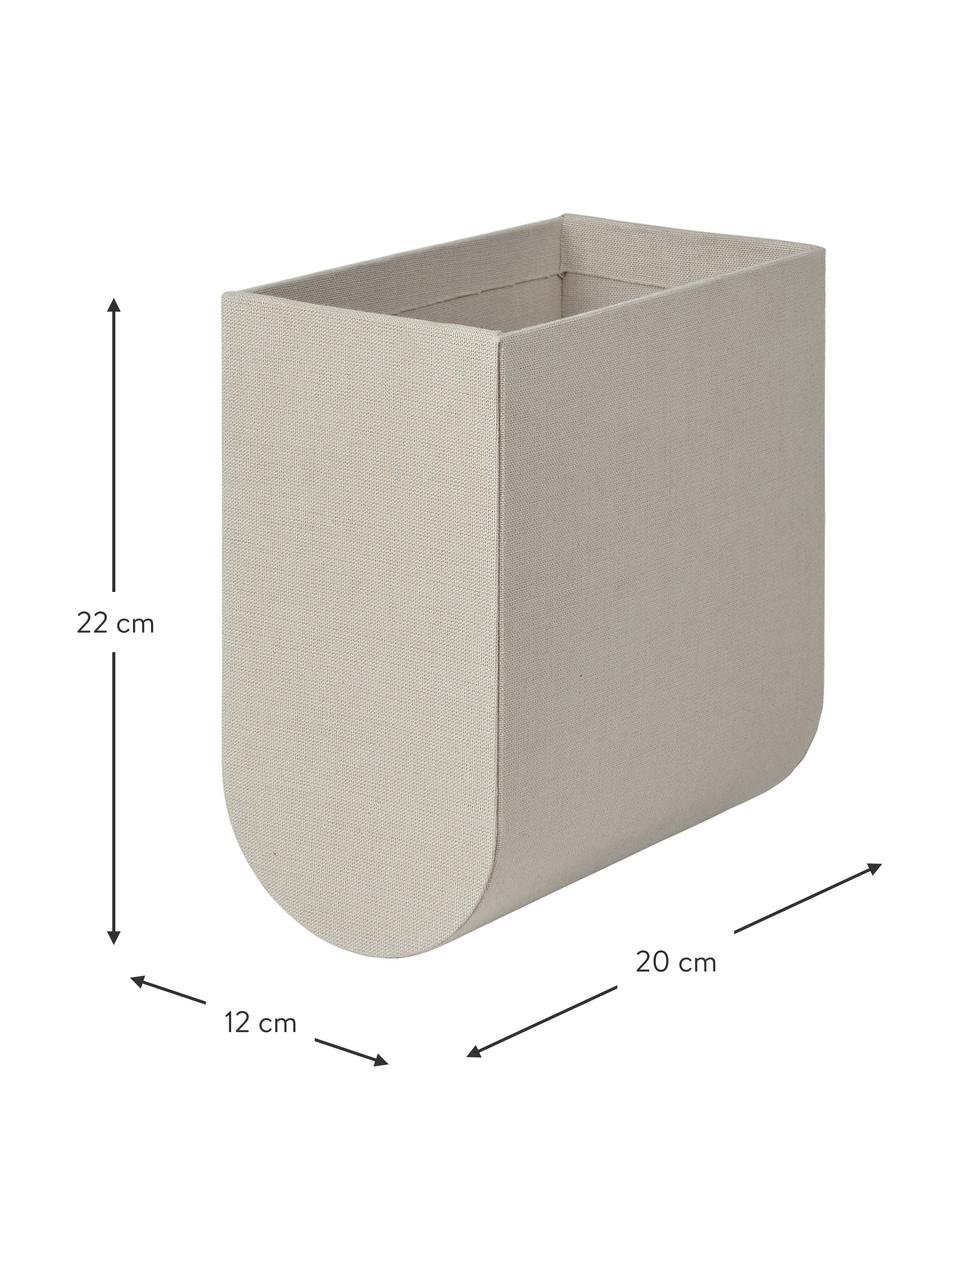 Handgefertigte Aufbewahrungsbox Curved, Bezug: 100 % Baumwolle, Korpus: Pappe, Greige, B 12 x H 22 cm